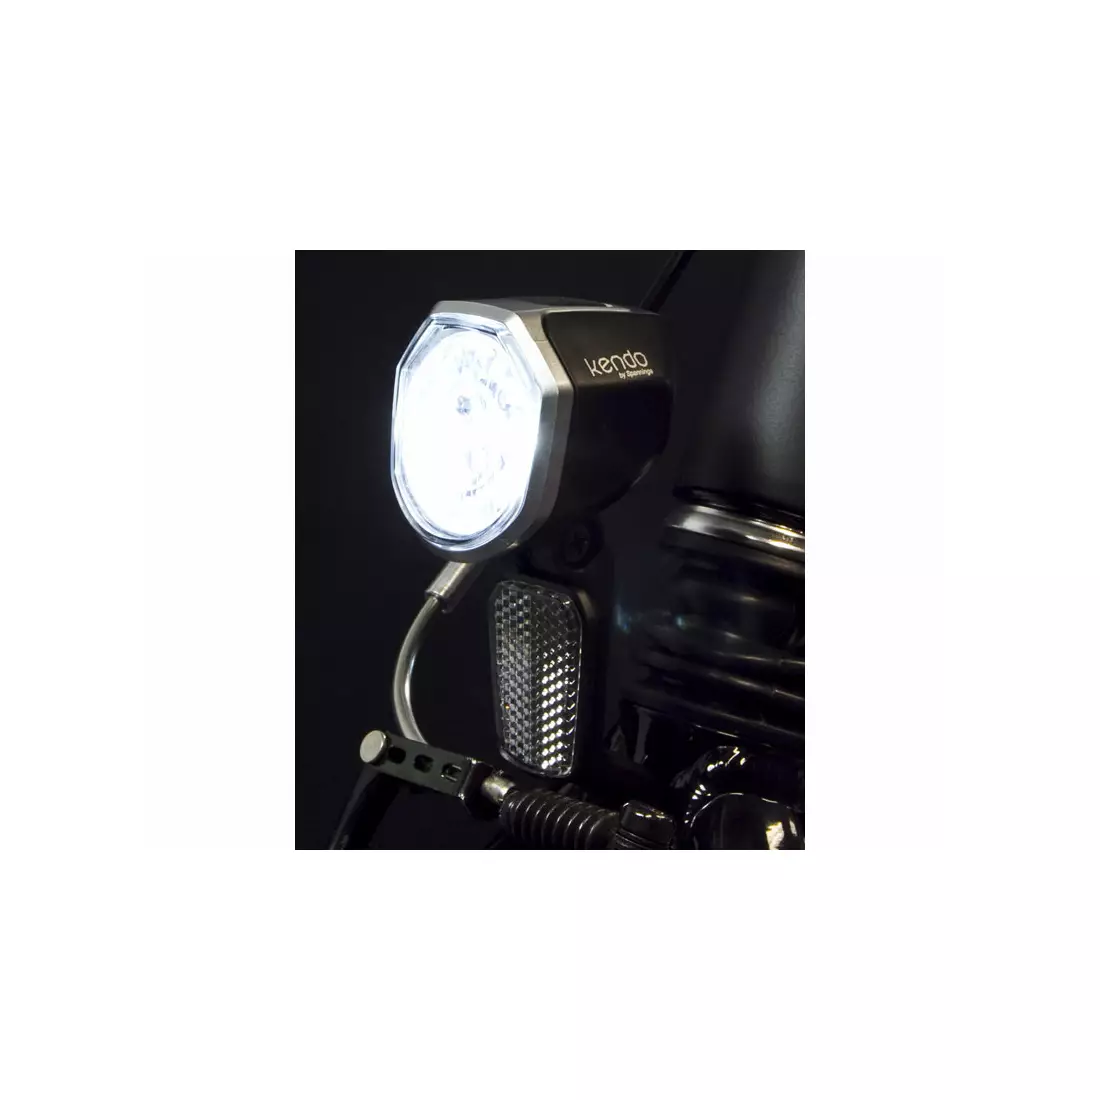 Přední světlo SPANNINGA KENDO+ XDO 30 luxů / 120 lumenů pro kabel dynamo + 55cm SNG-H057038